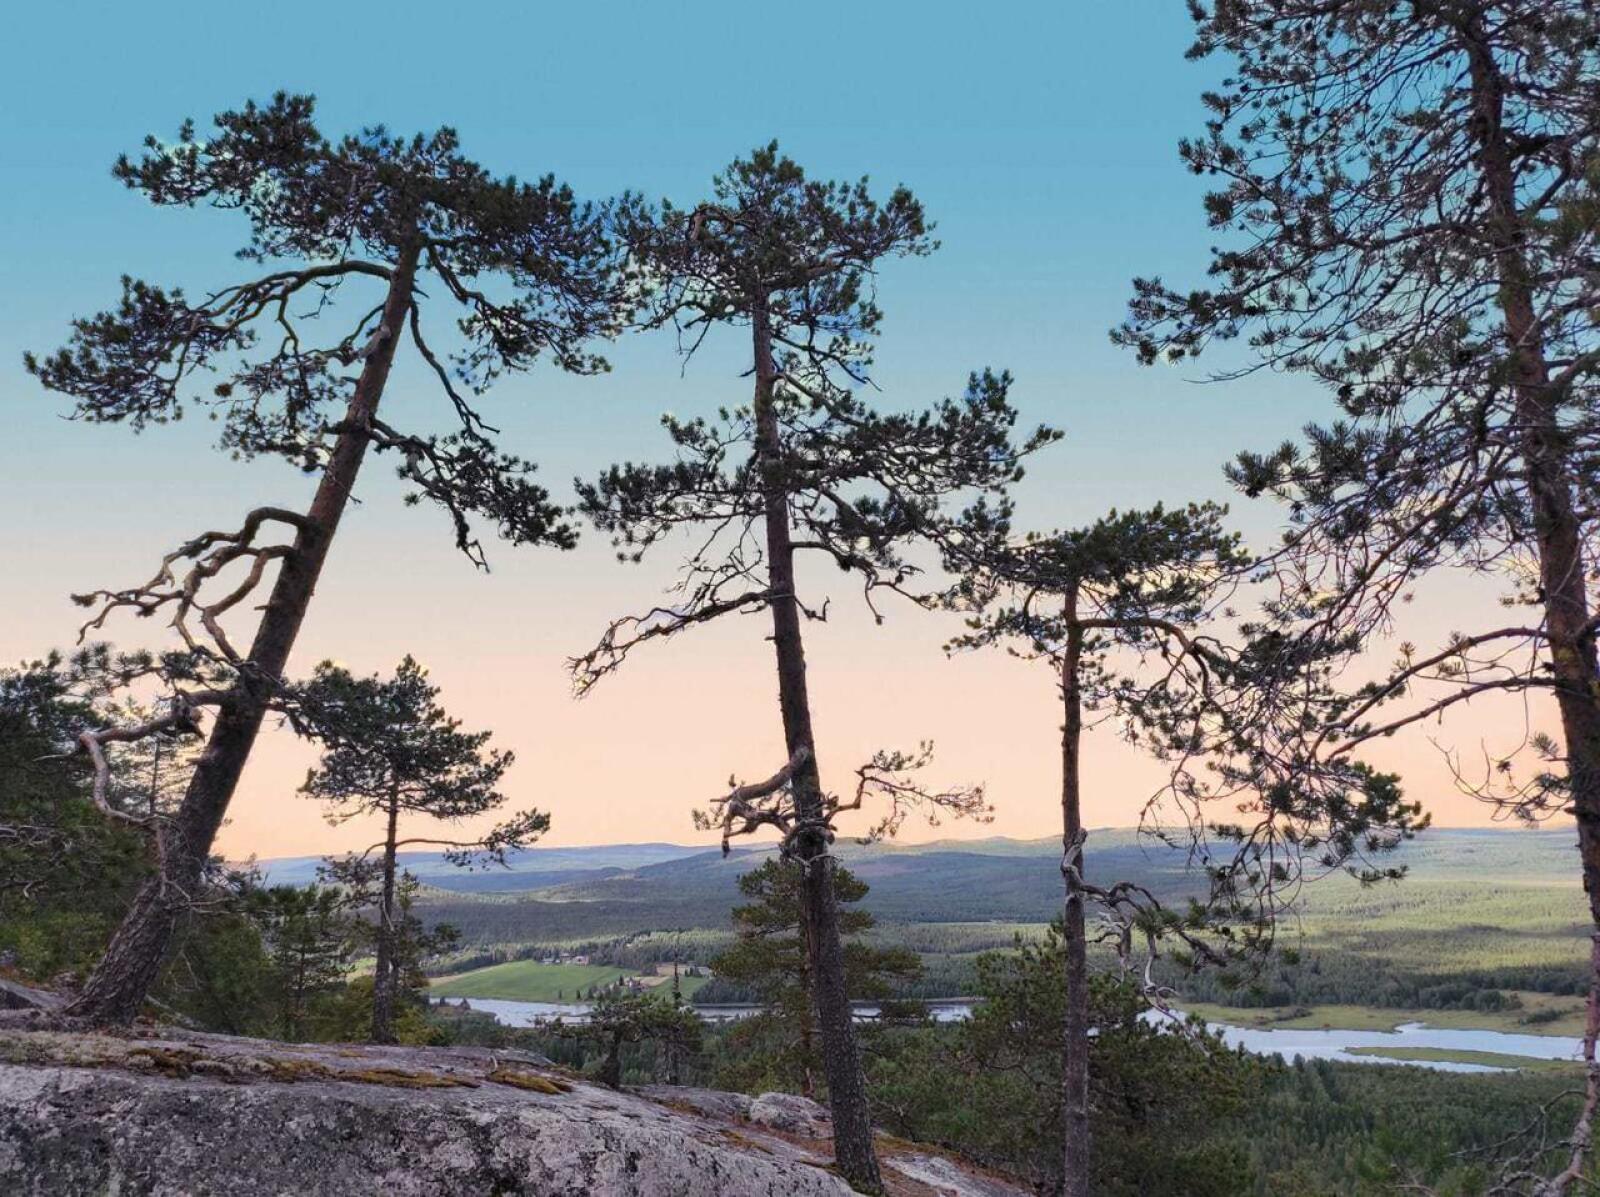 Aavasaksan ja Tornionjokilaakson maisemat ovat Suomen kansallismaisemia.